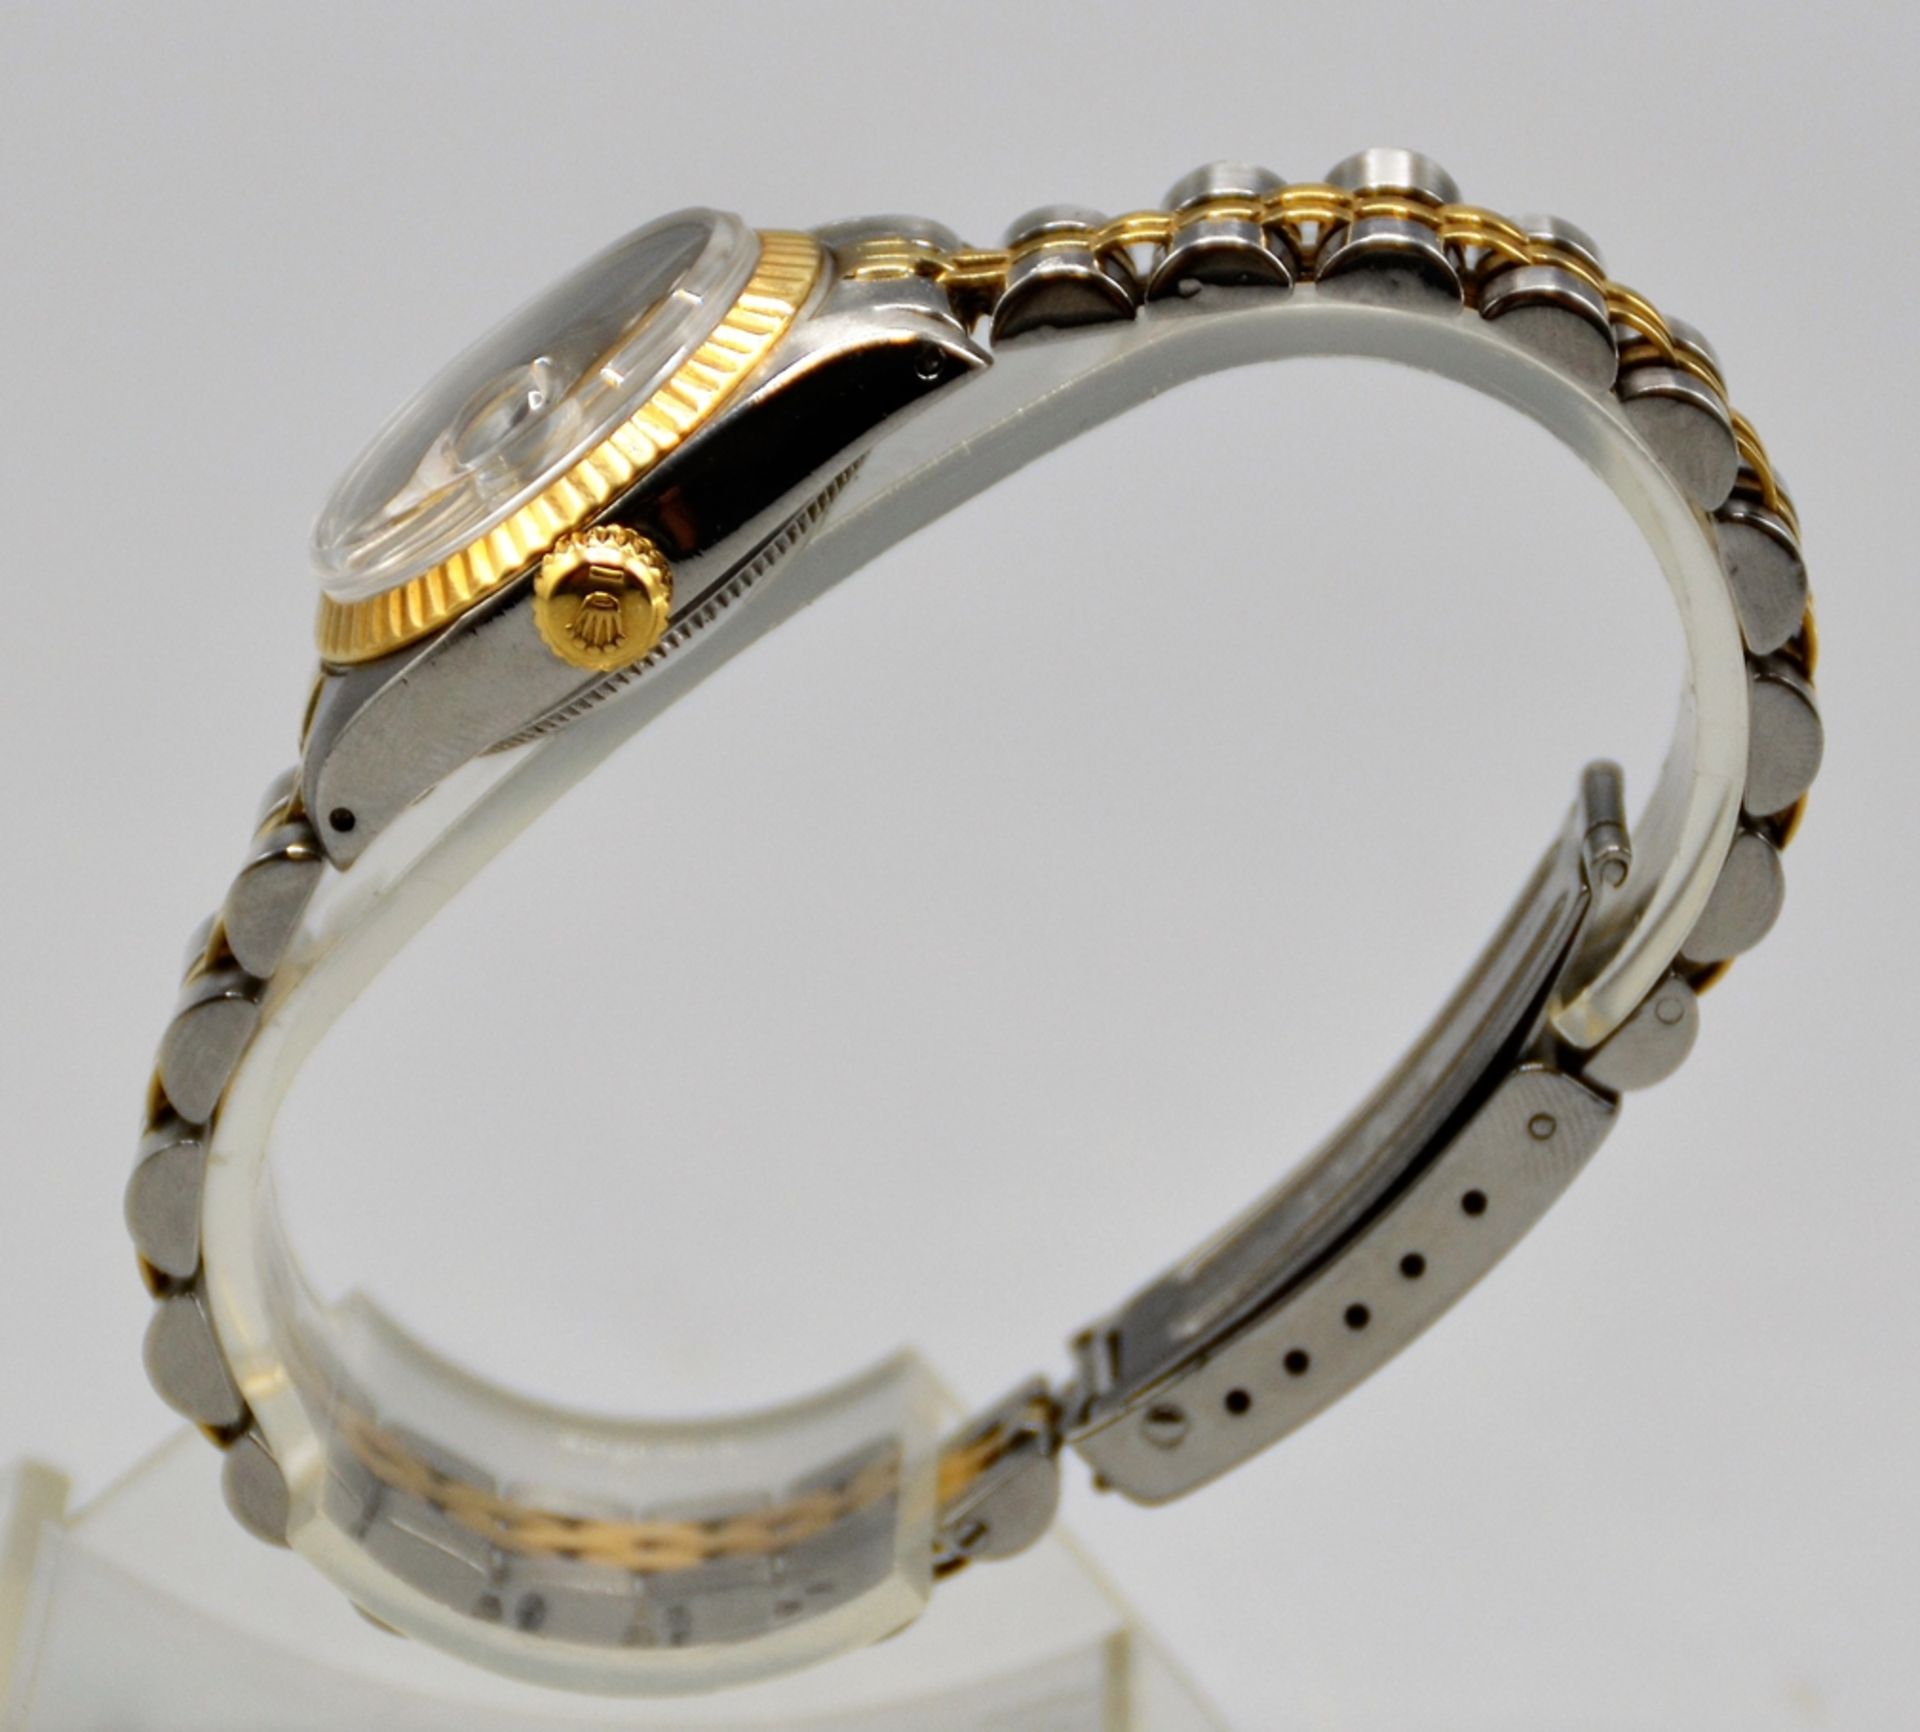 Rolex Oyster Perpetual Datejust Stahl / Gold / Diamanten mit Box und Papieren ( Garantiekarte ), Re - Image 5 of 9